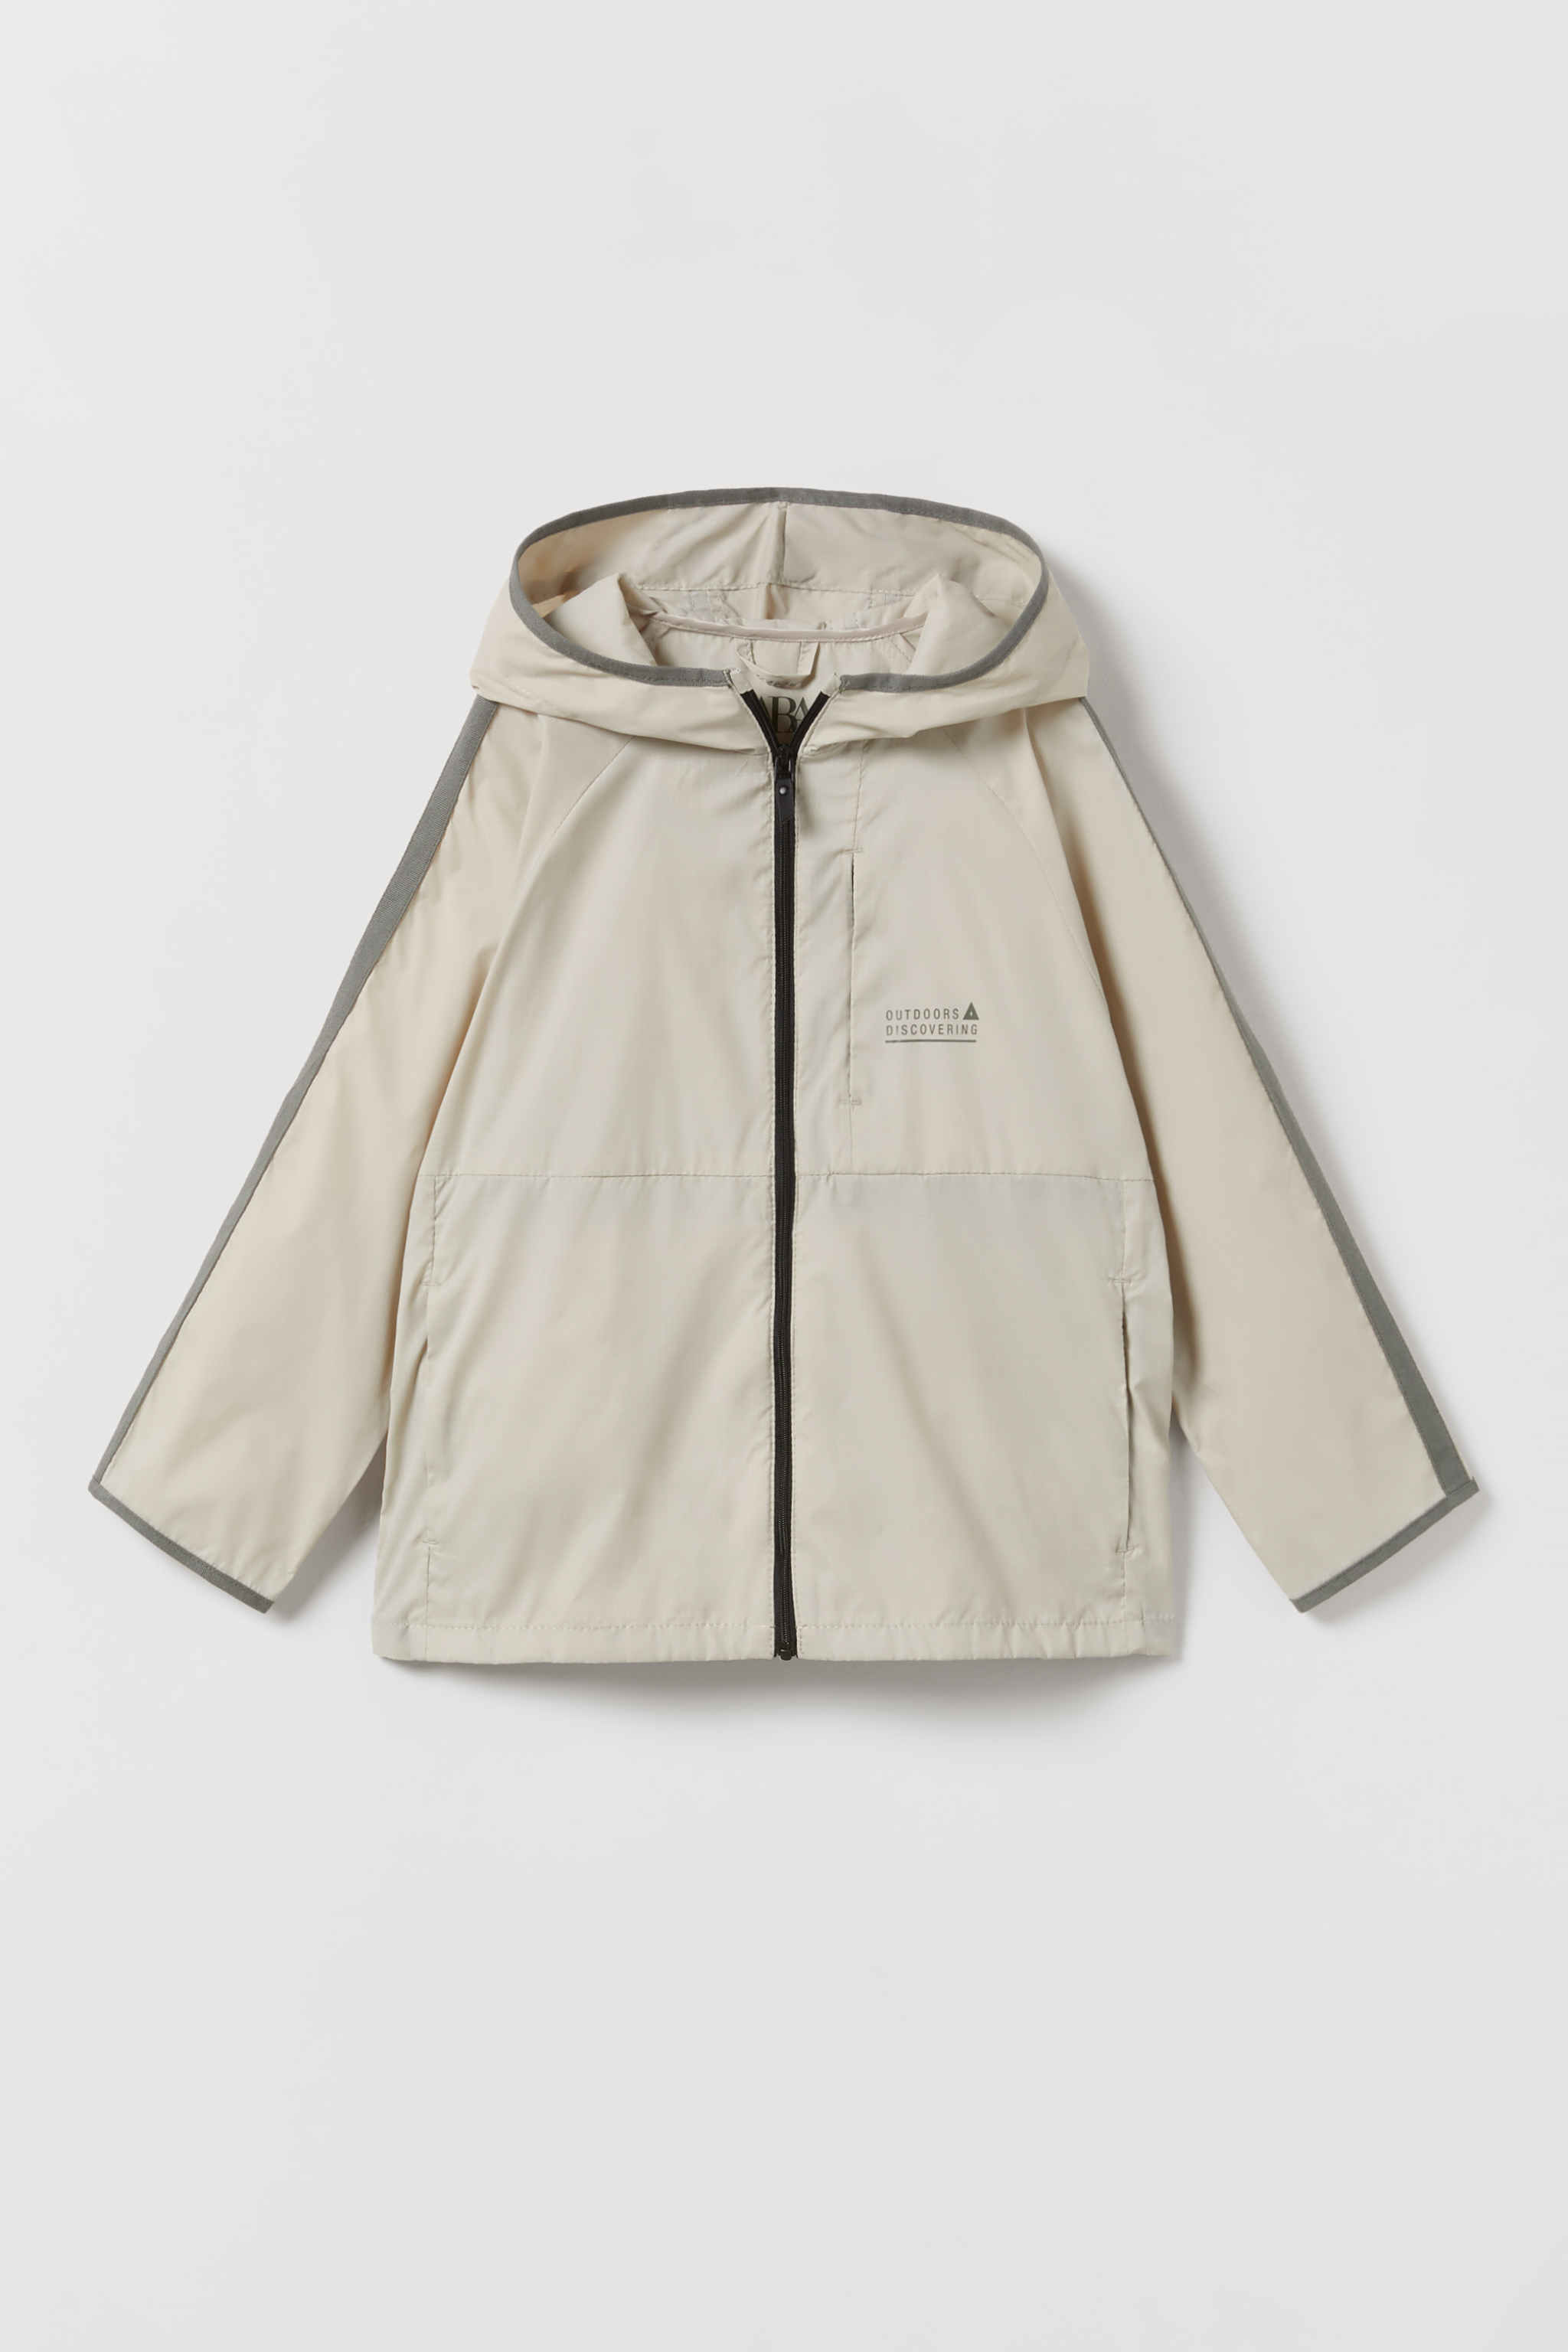 Zara Wind Jacket | sites.unimi.it